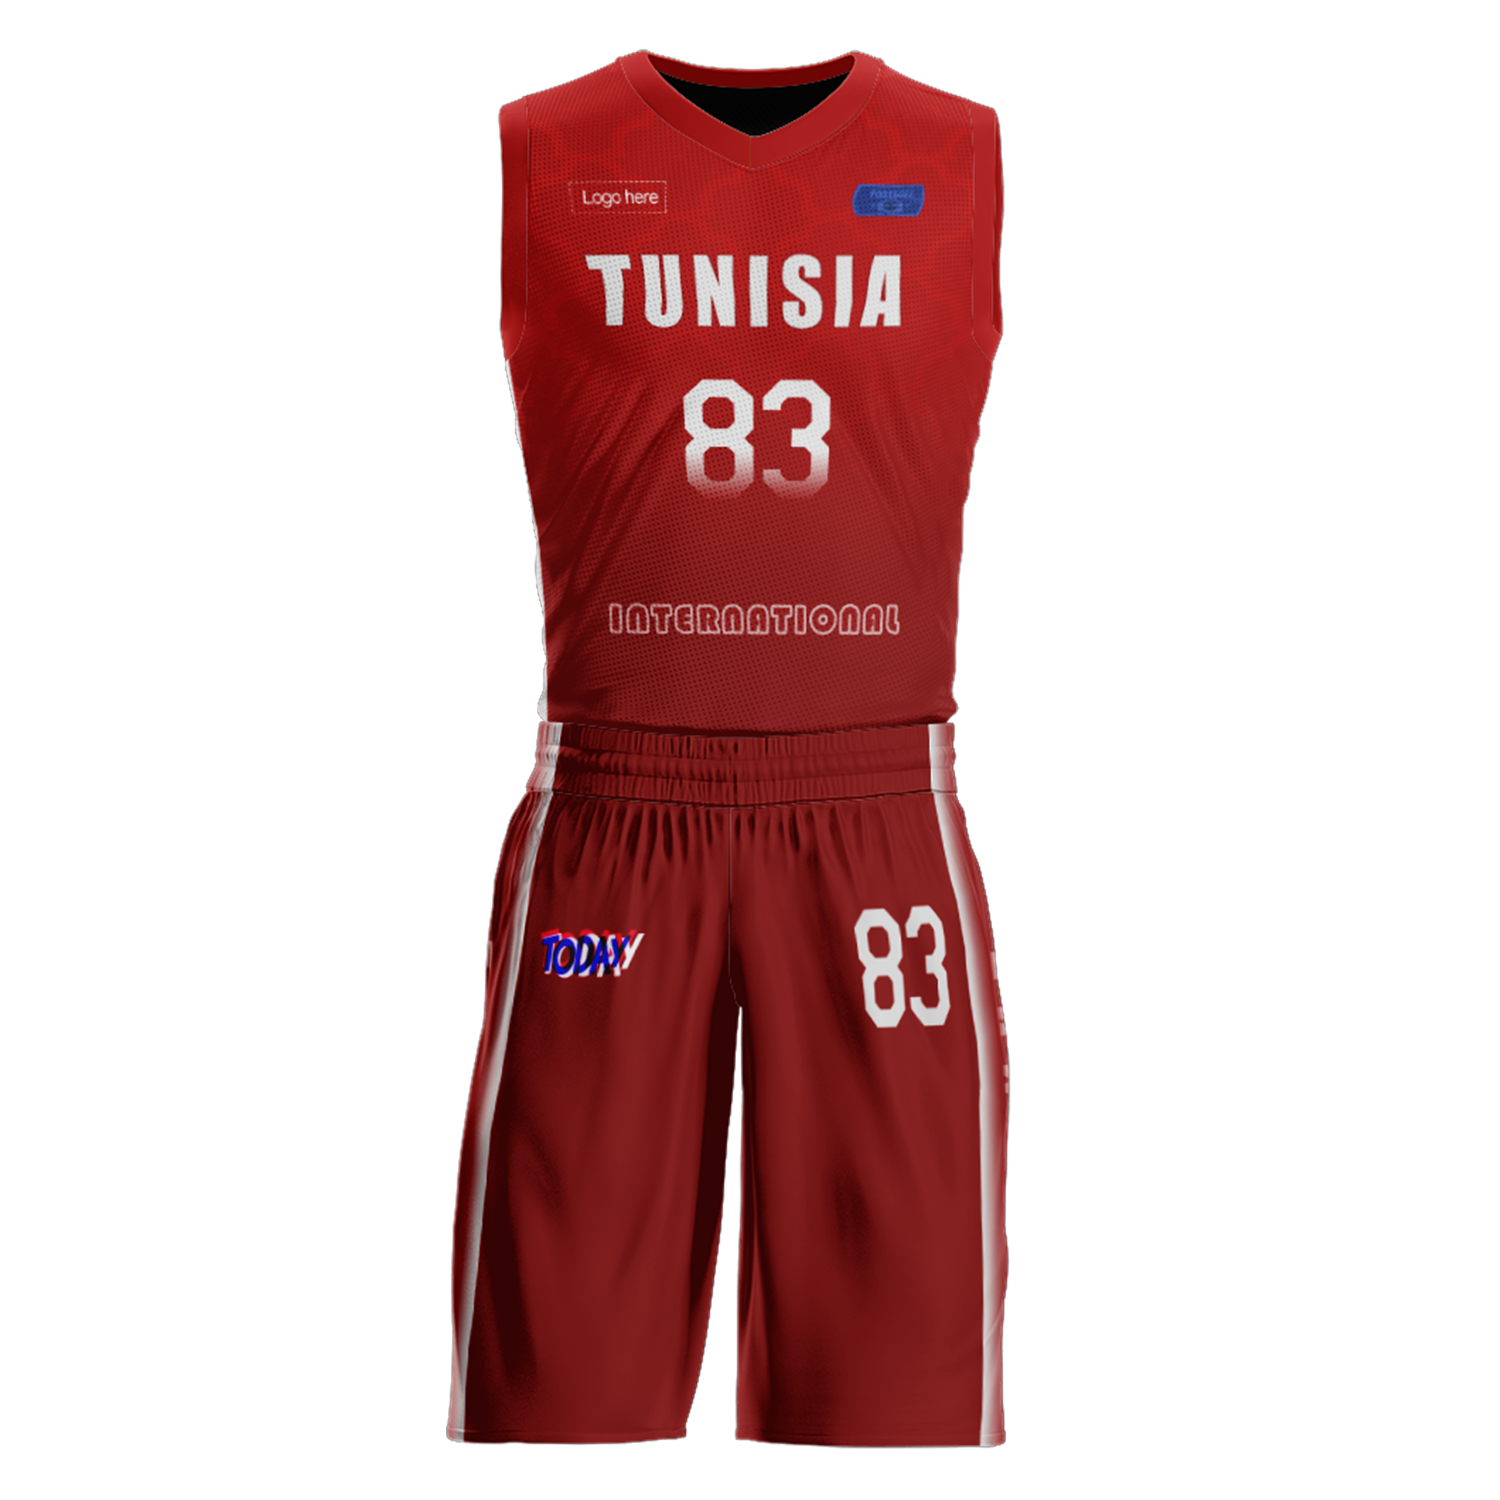 Изготовленные на заказ баскетбольные костюмы сборной Туниса